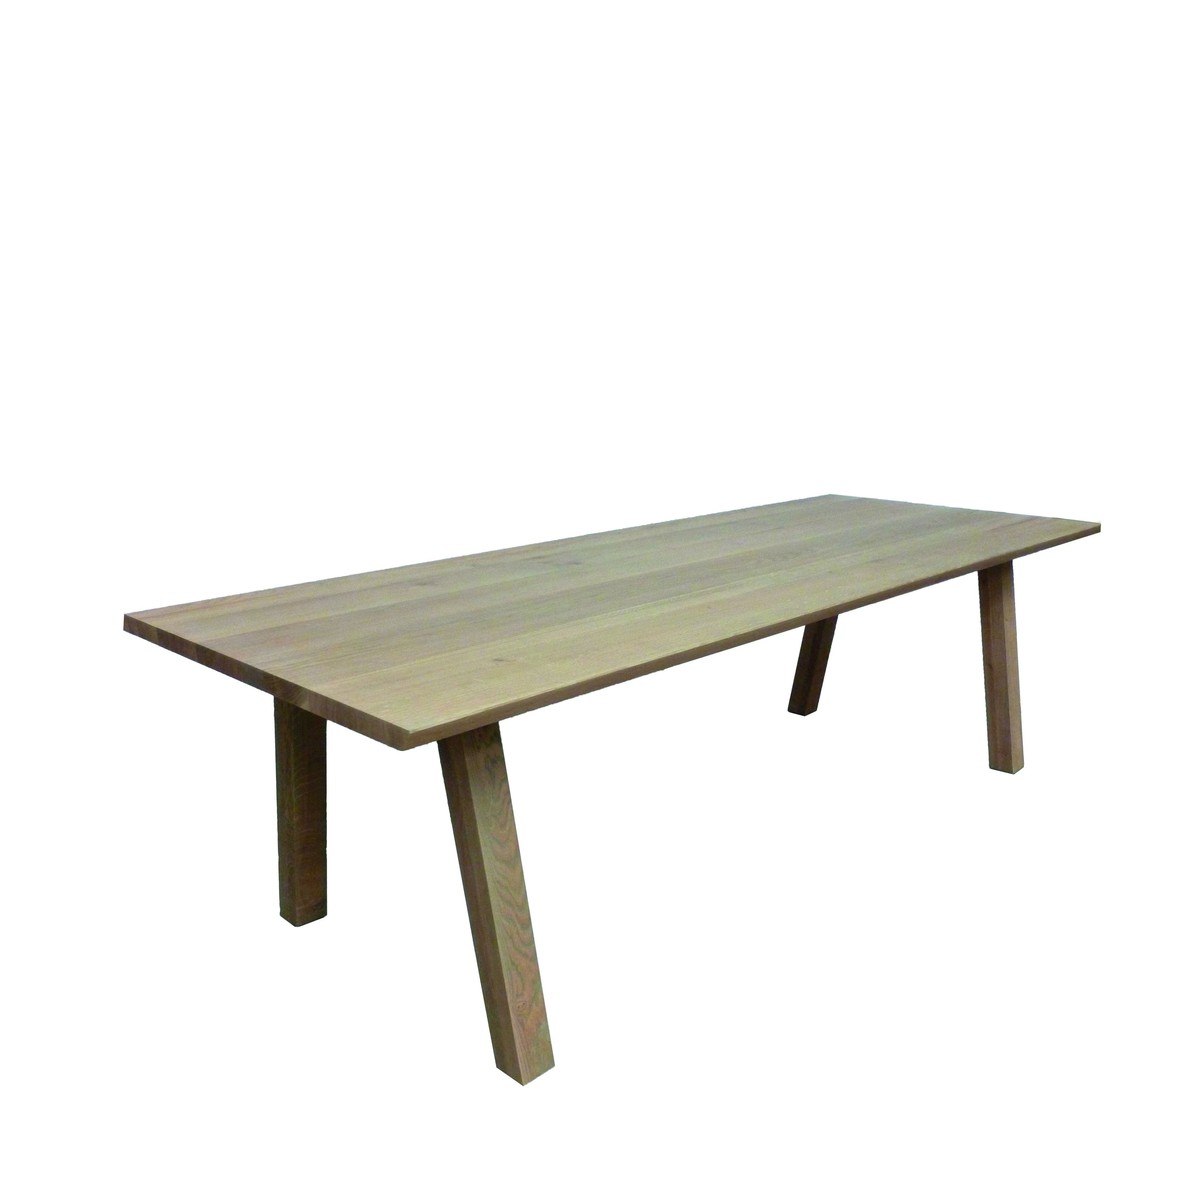   Table Dolf Droit rectangulaire  160x100x77cm